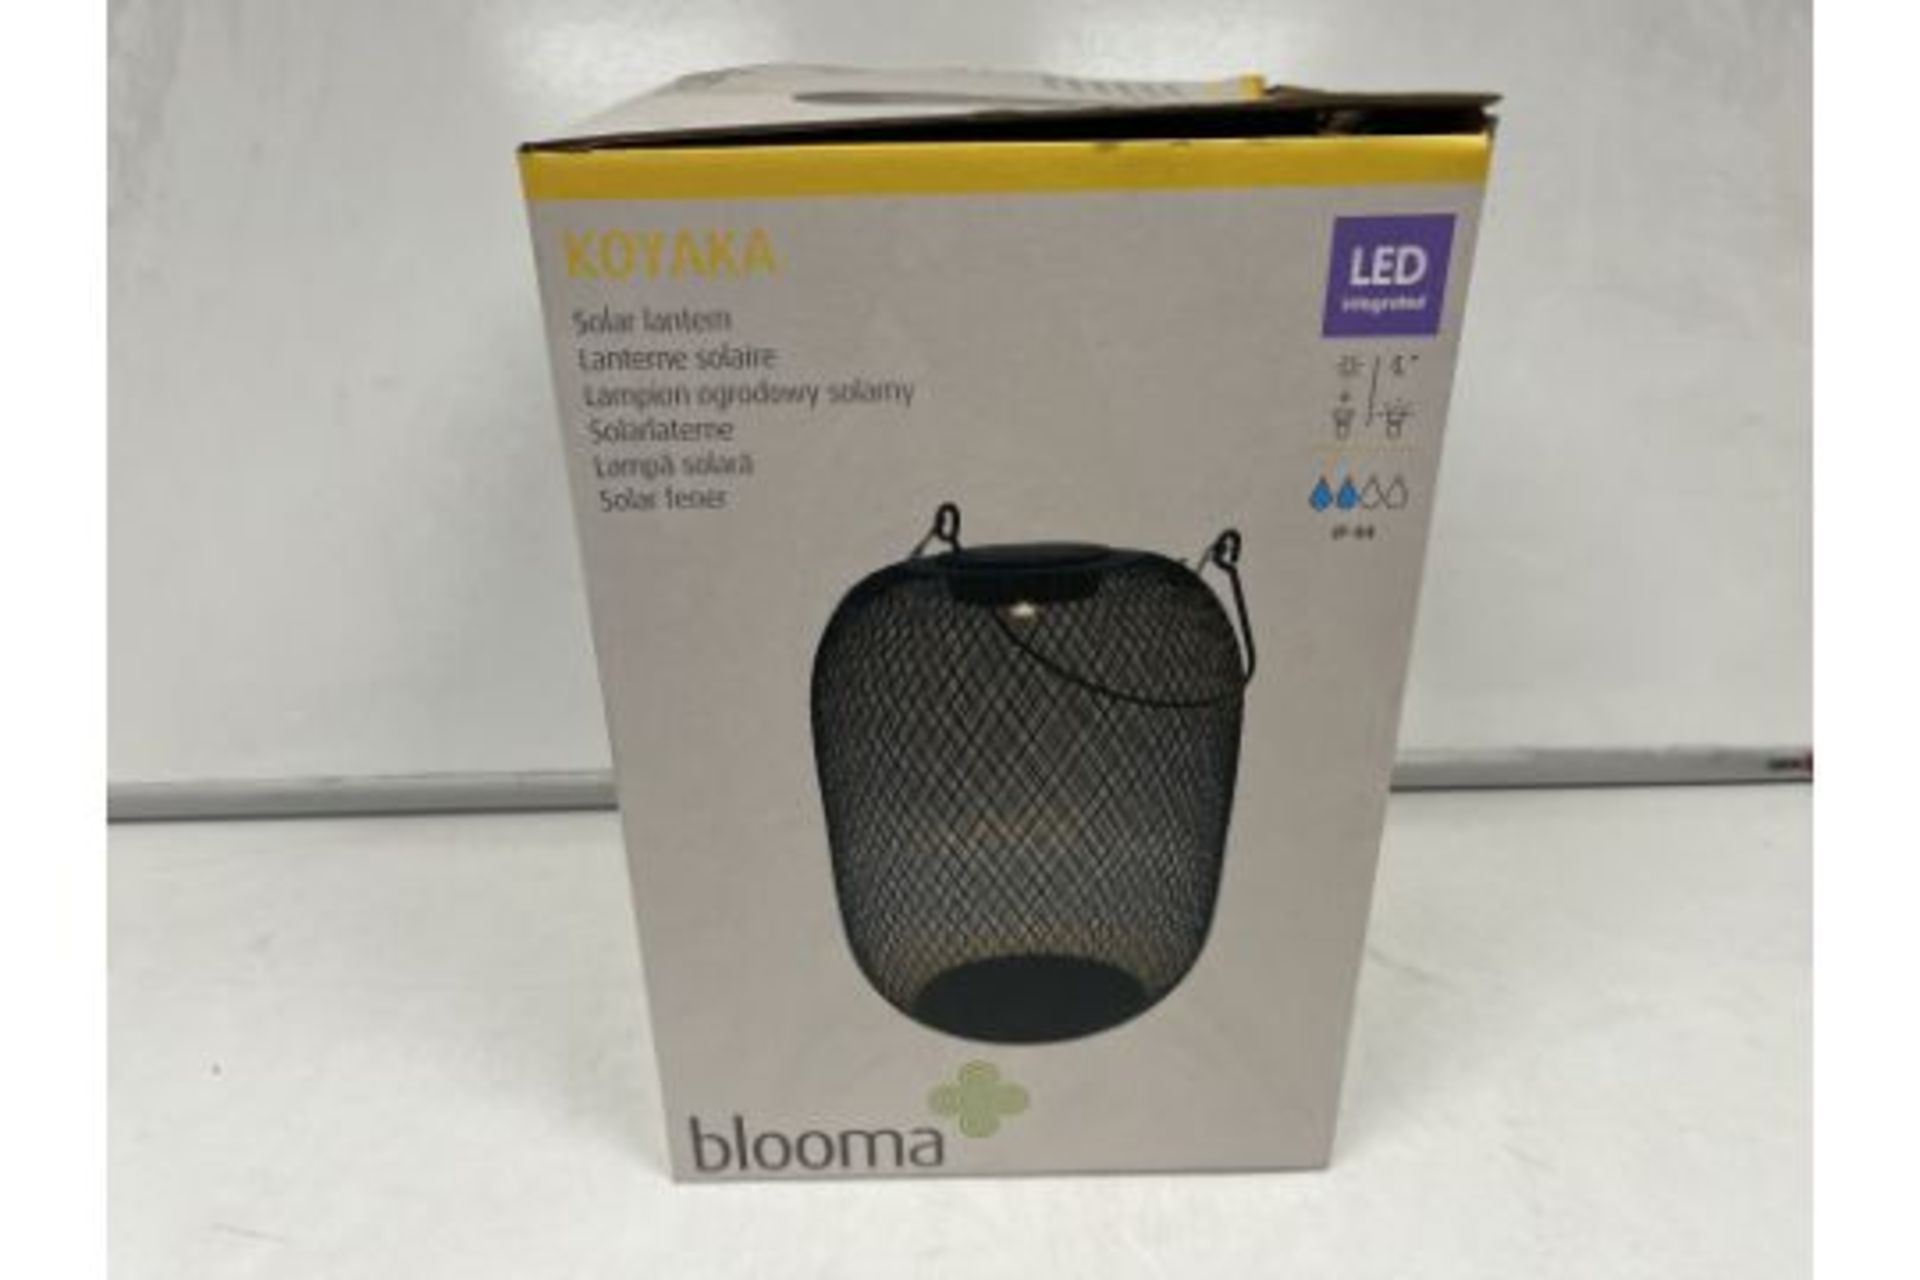 6 X NEW BOXED BLOOMA KOYAKA LARGE LED SOLAR LANTERN LIGHTS. ROW9.10